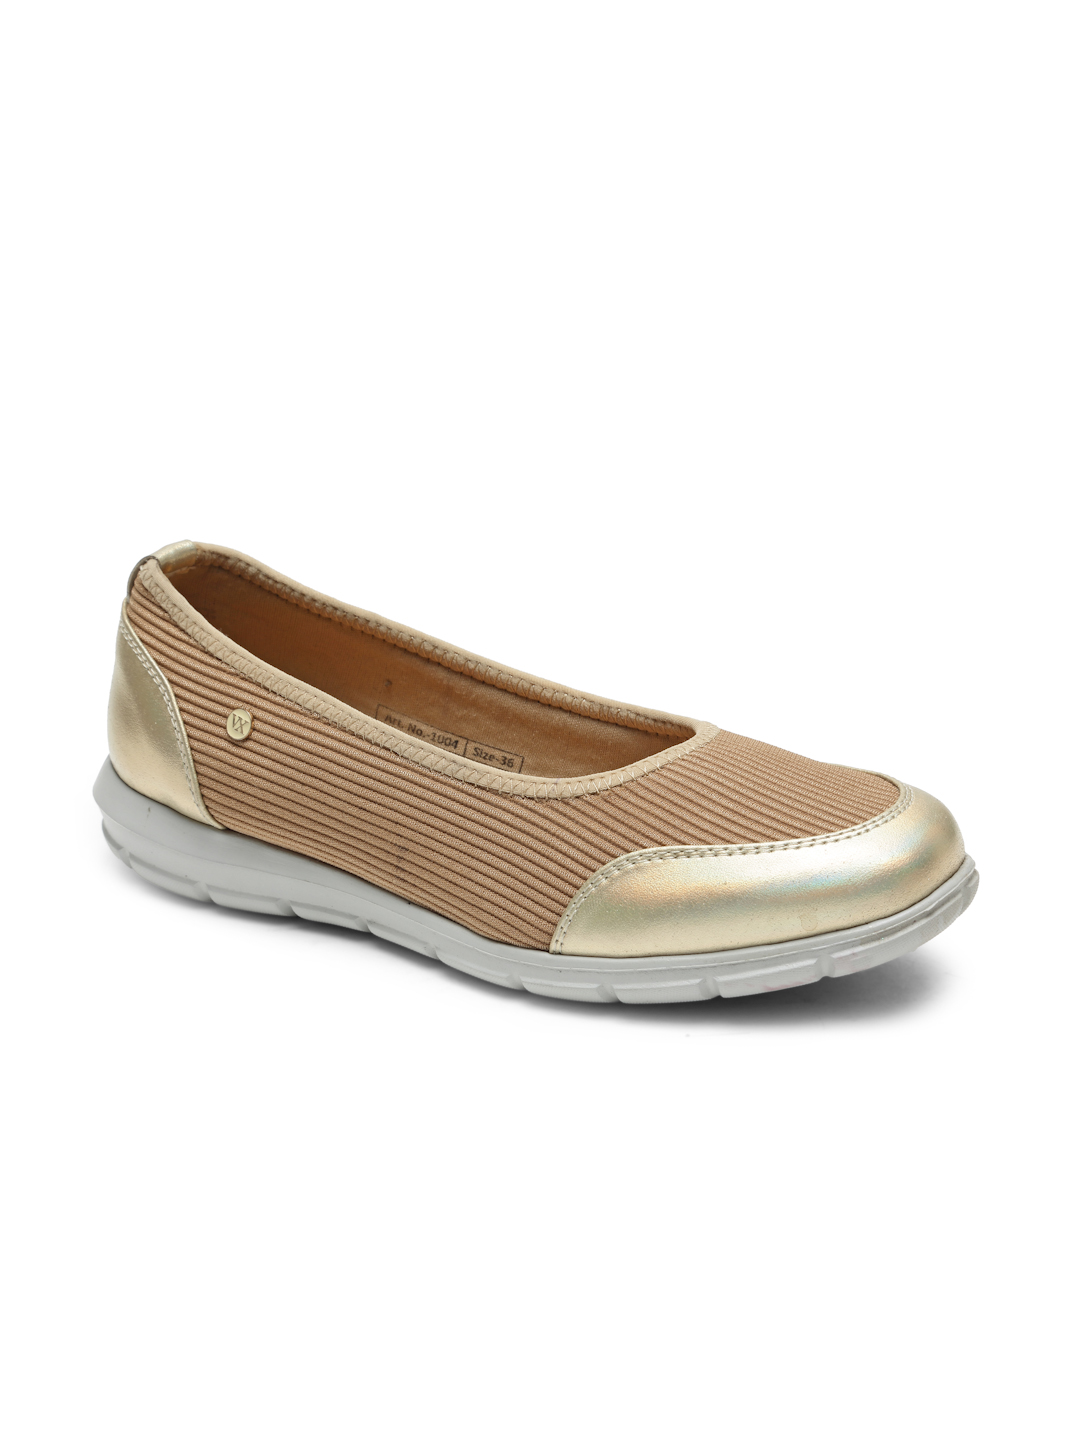 Buy Von Wellx Germany Comfort Women's Beige Casual Shoes Alice Online in Qatar